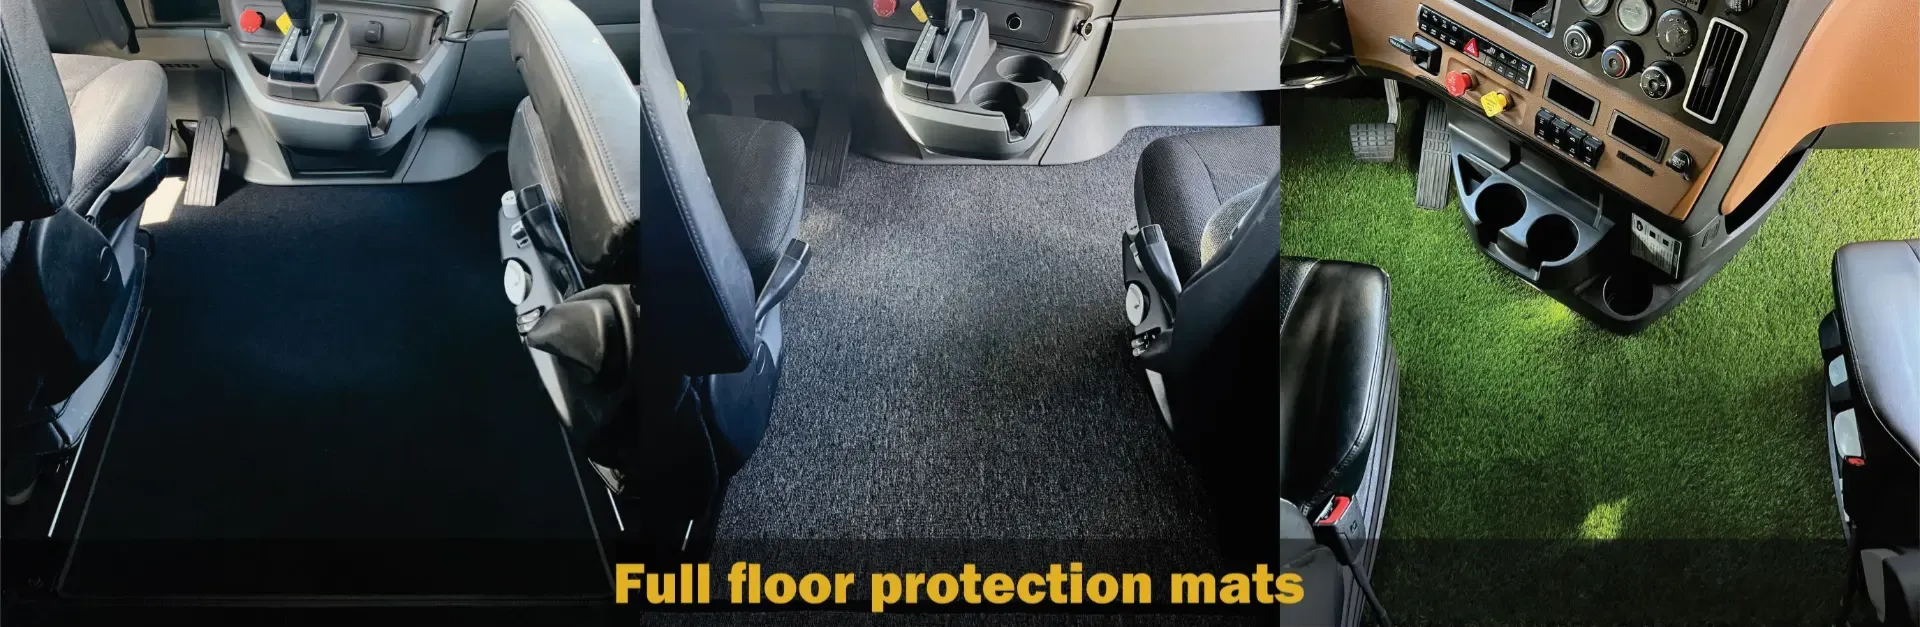 Full floor protection custom mats for tracks